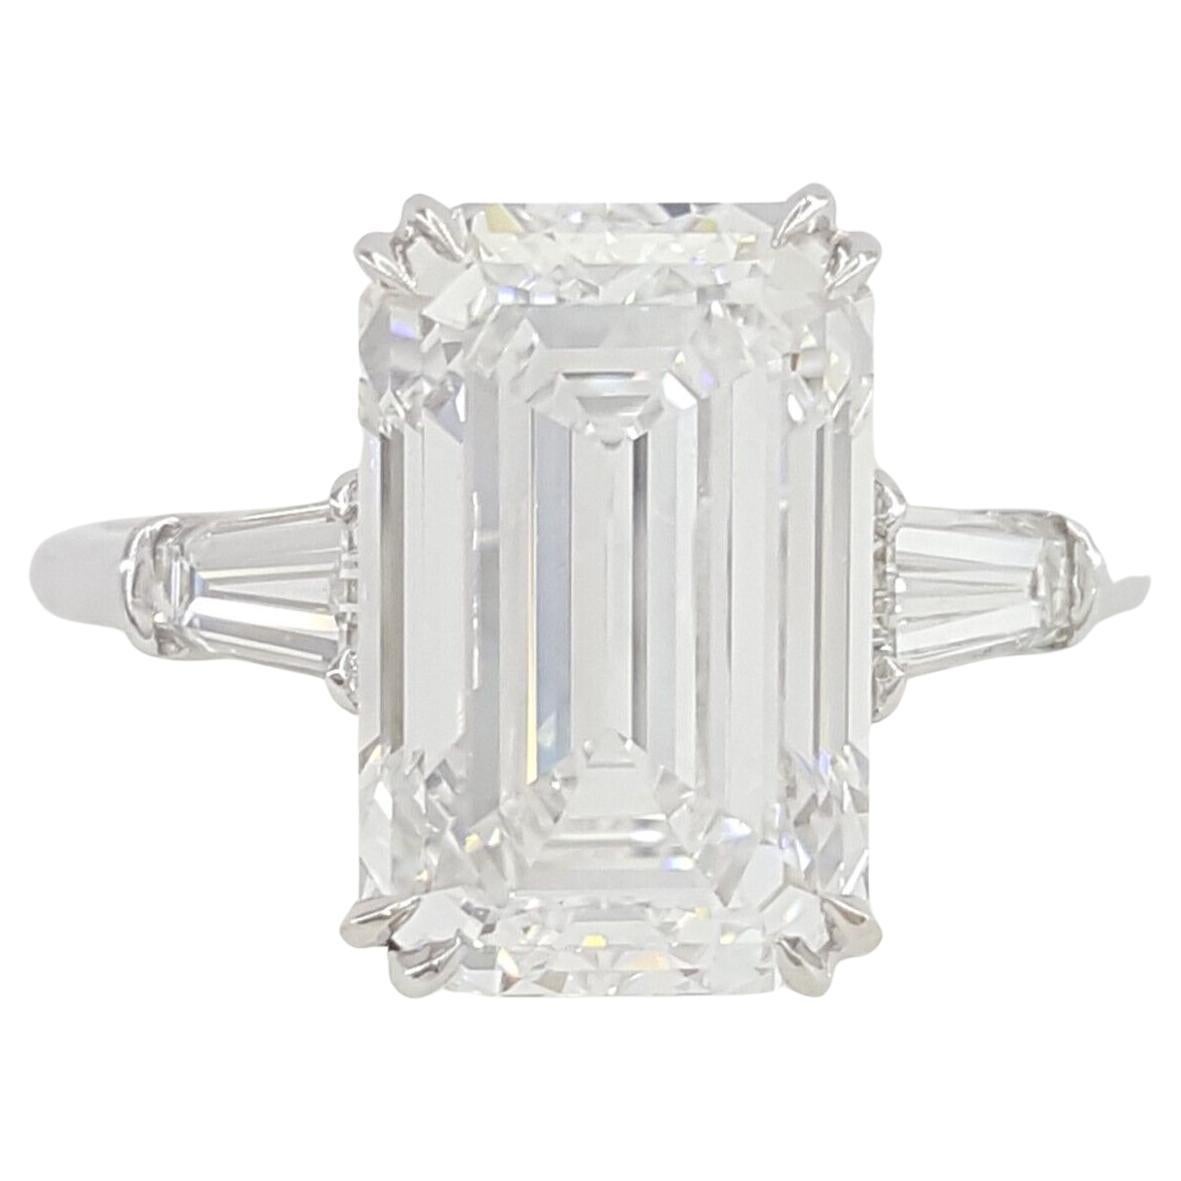 HARRY WINSTON Anillo de diamantes talla esmeralda de grado de inversión color D